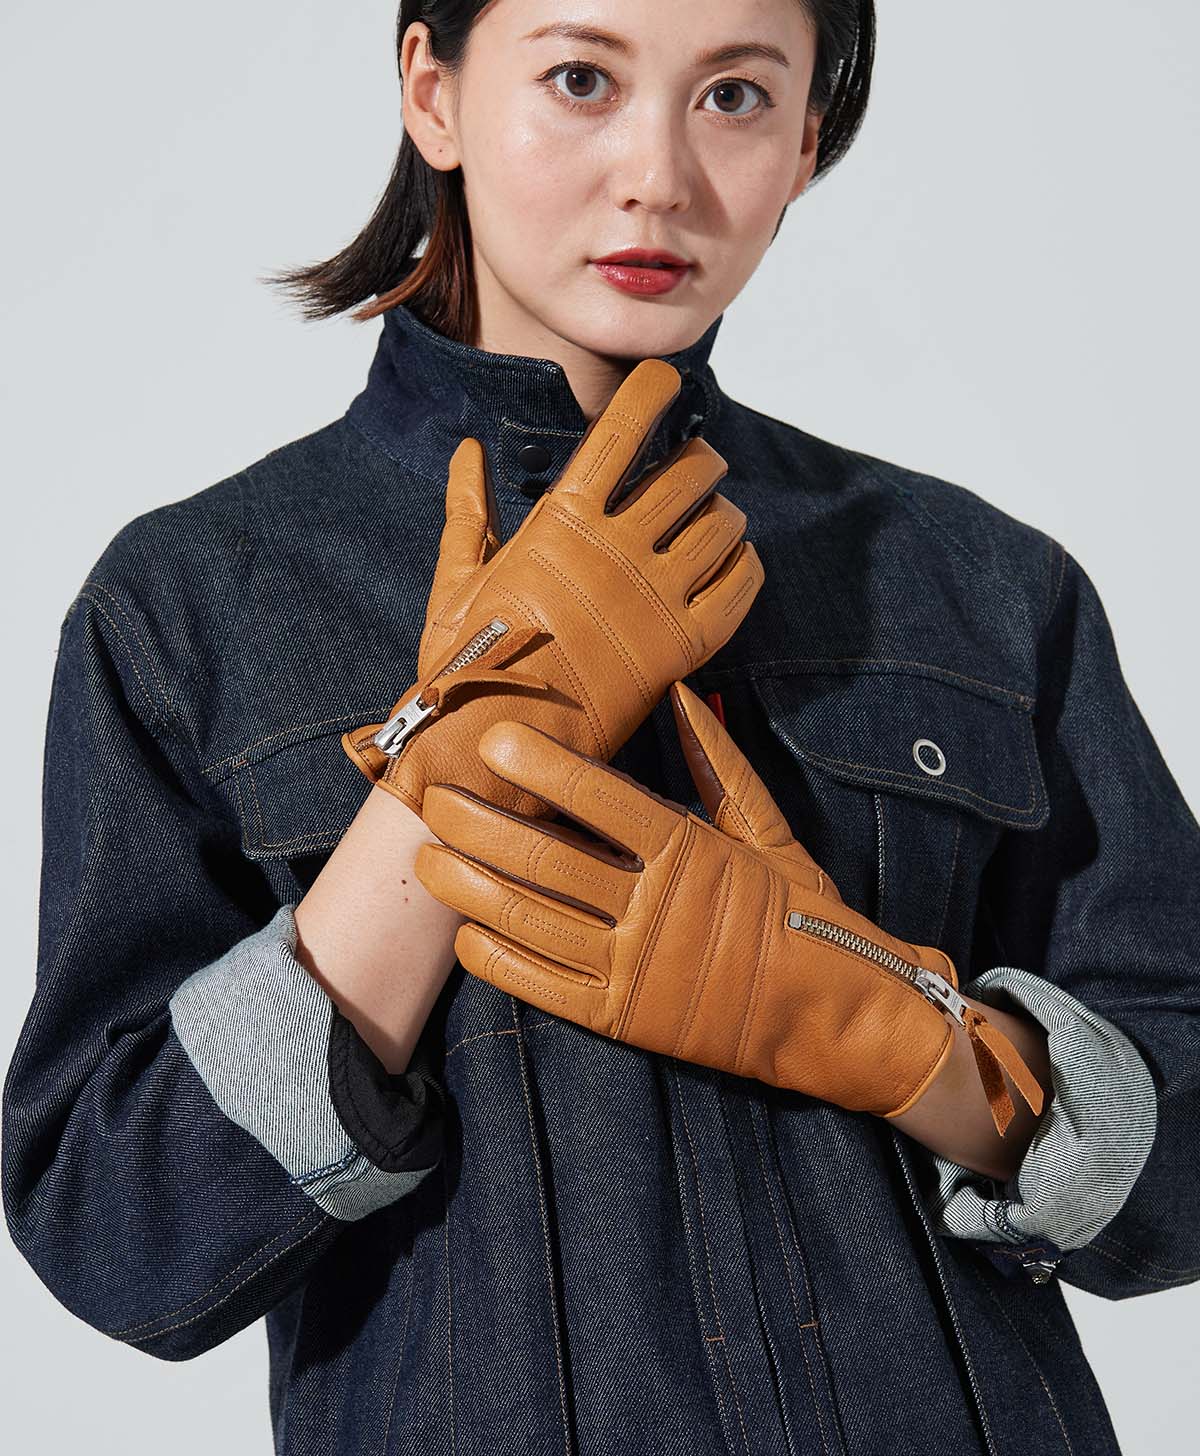 ROX Glove / Brown (Wanita)